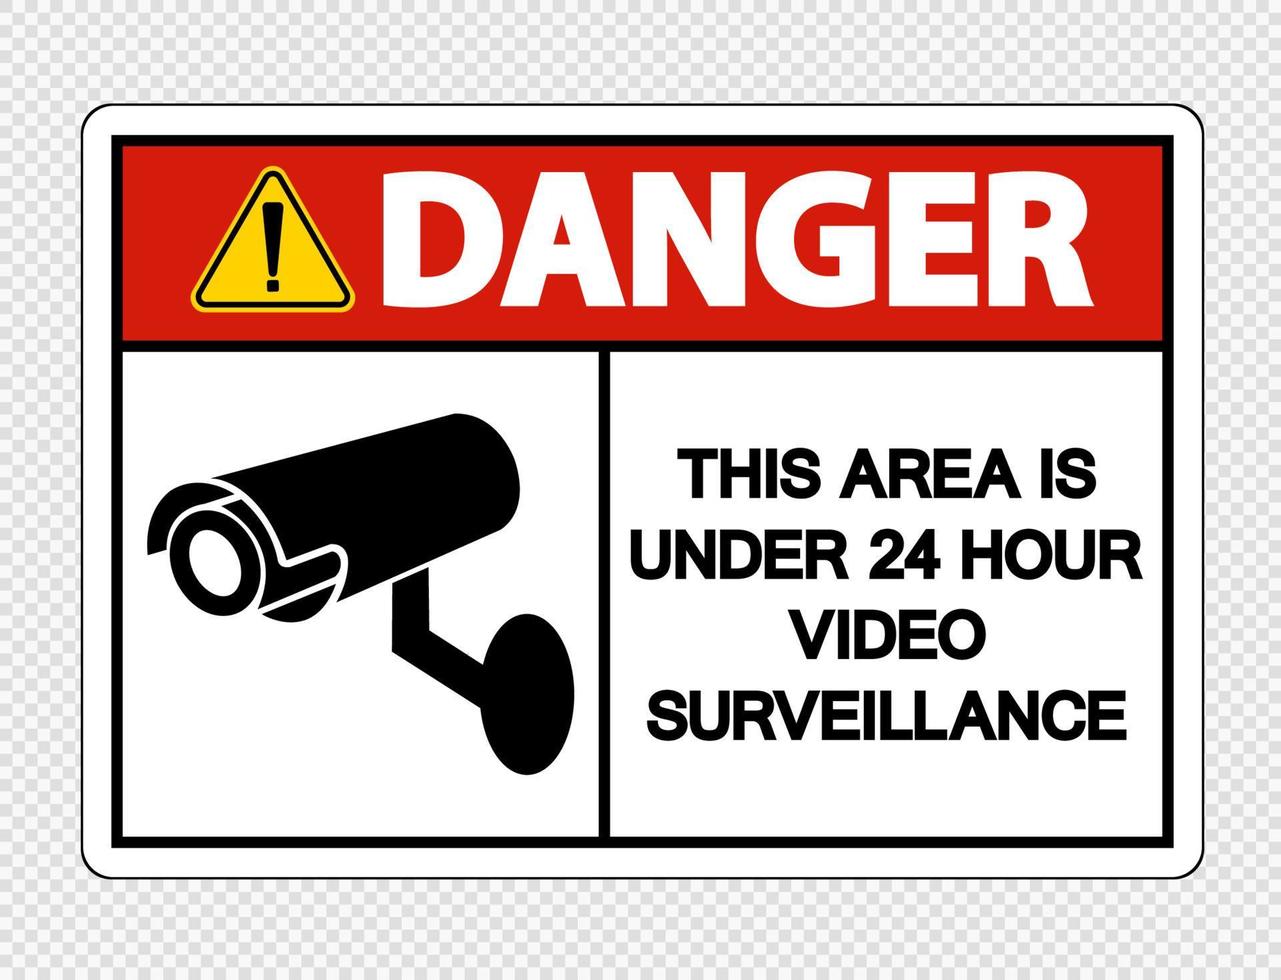 Gefahr dieser Bereich ist unter 24 Stunden Videoüberwachungsschild auf transparentem Hintergrund vektor